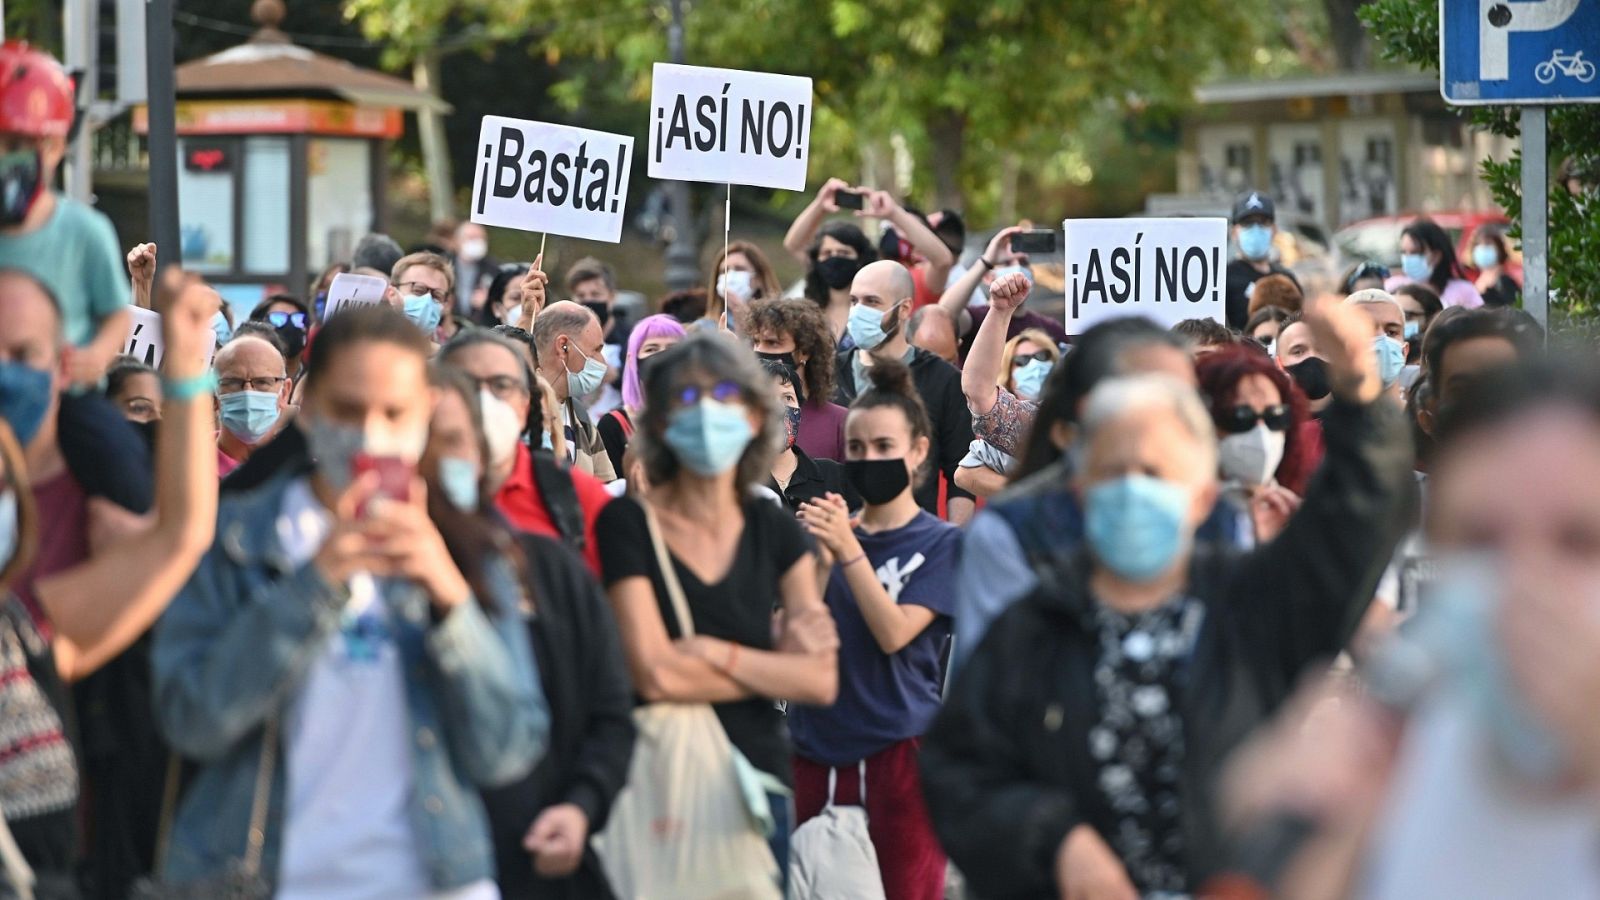 Sindicatos, asociaciones y los partidos de la izquierda piden un plan "riguroso" y basado en "criterios científicos" para afrontar la pandemia en "toda la región" de Madrid